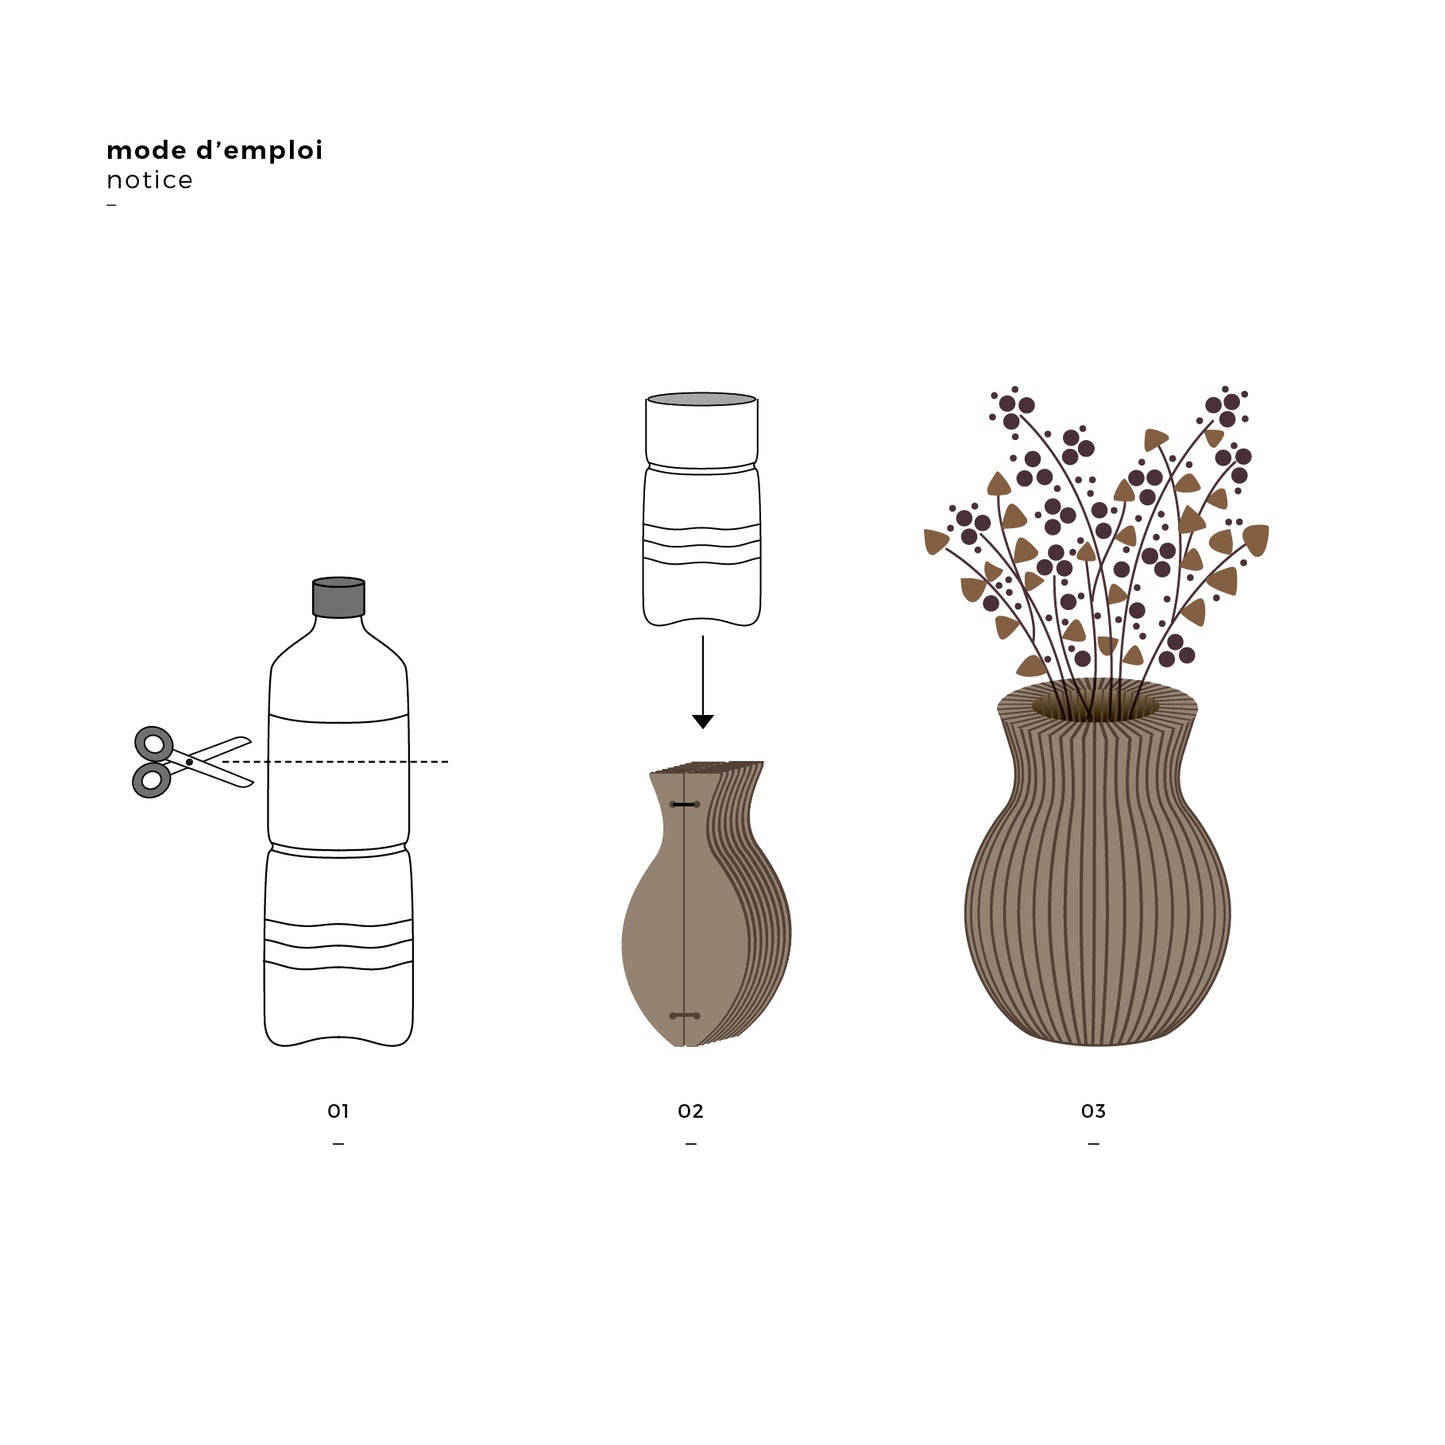 Vase cache-cache | Losange